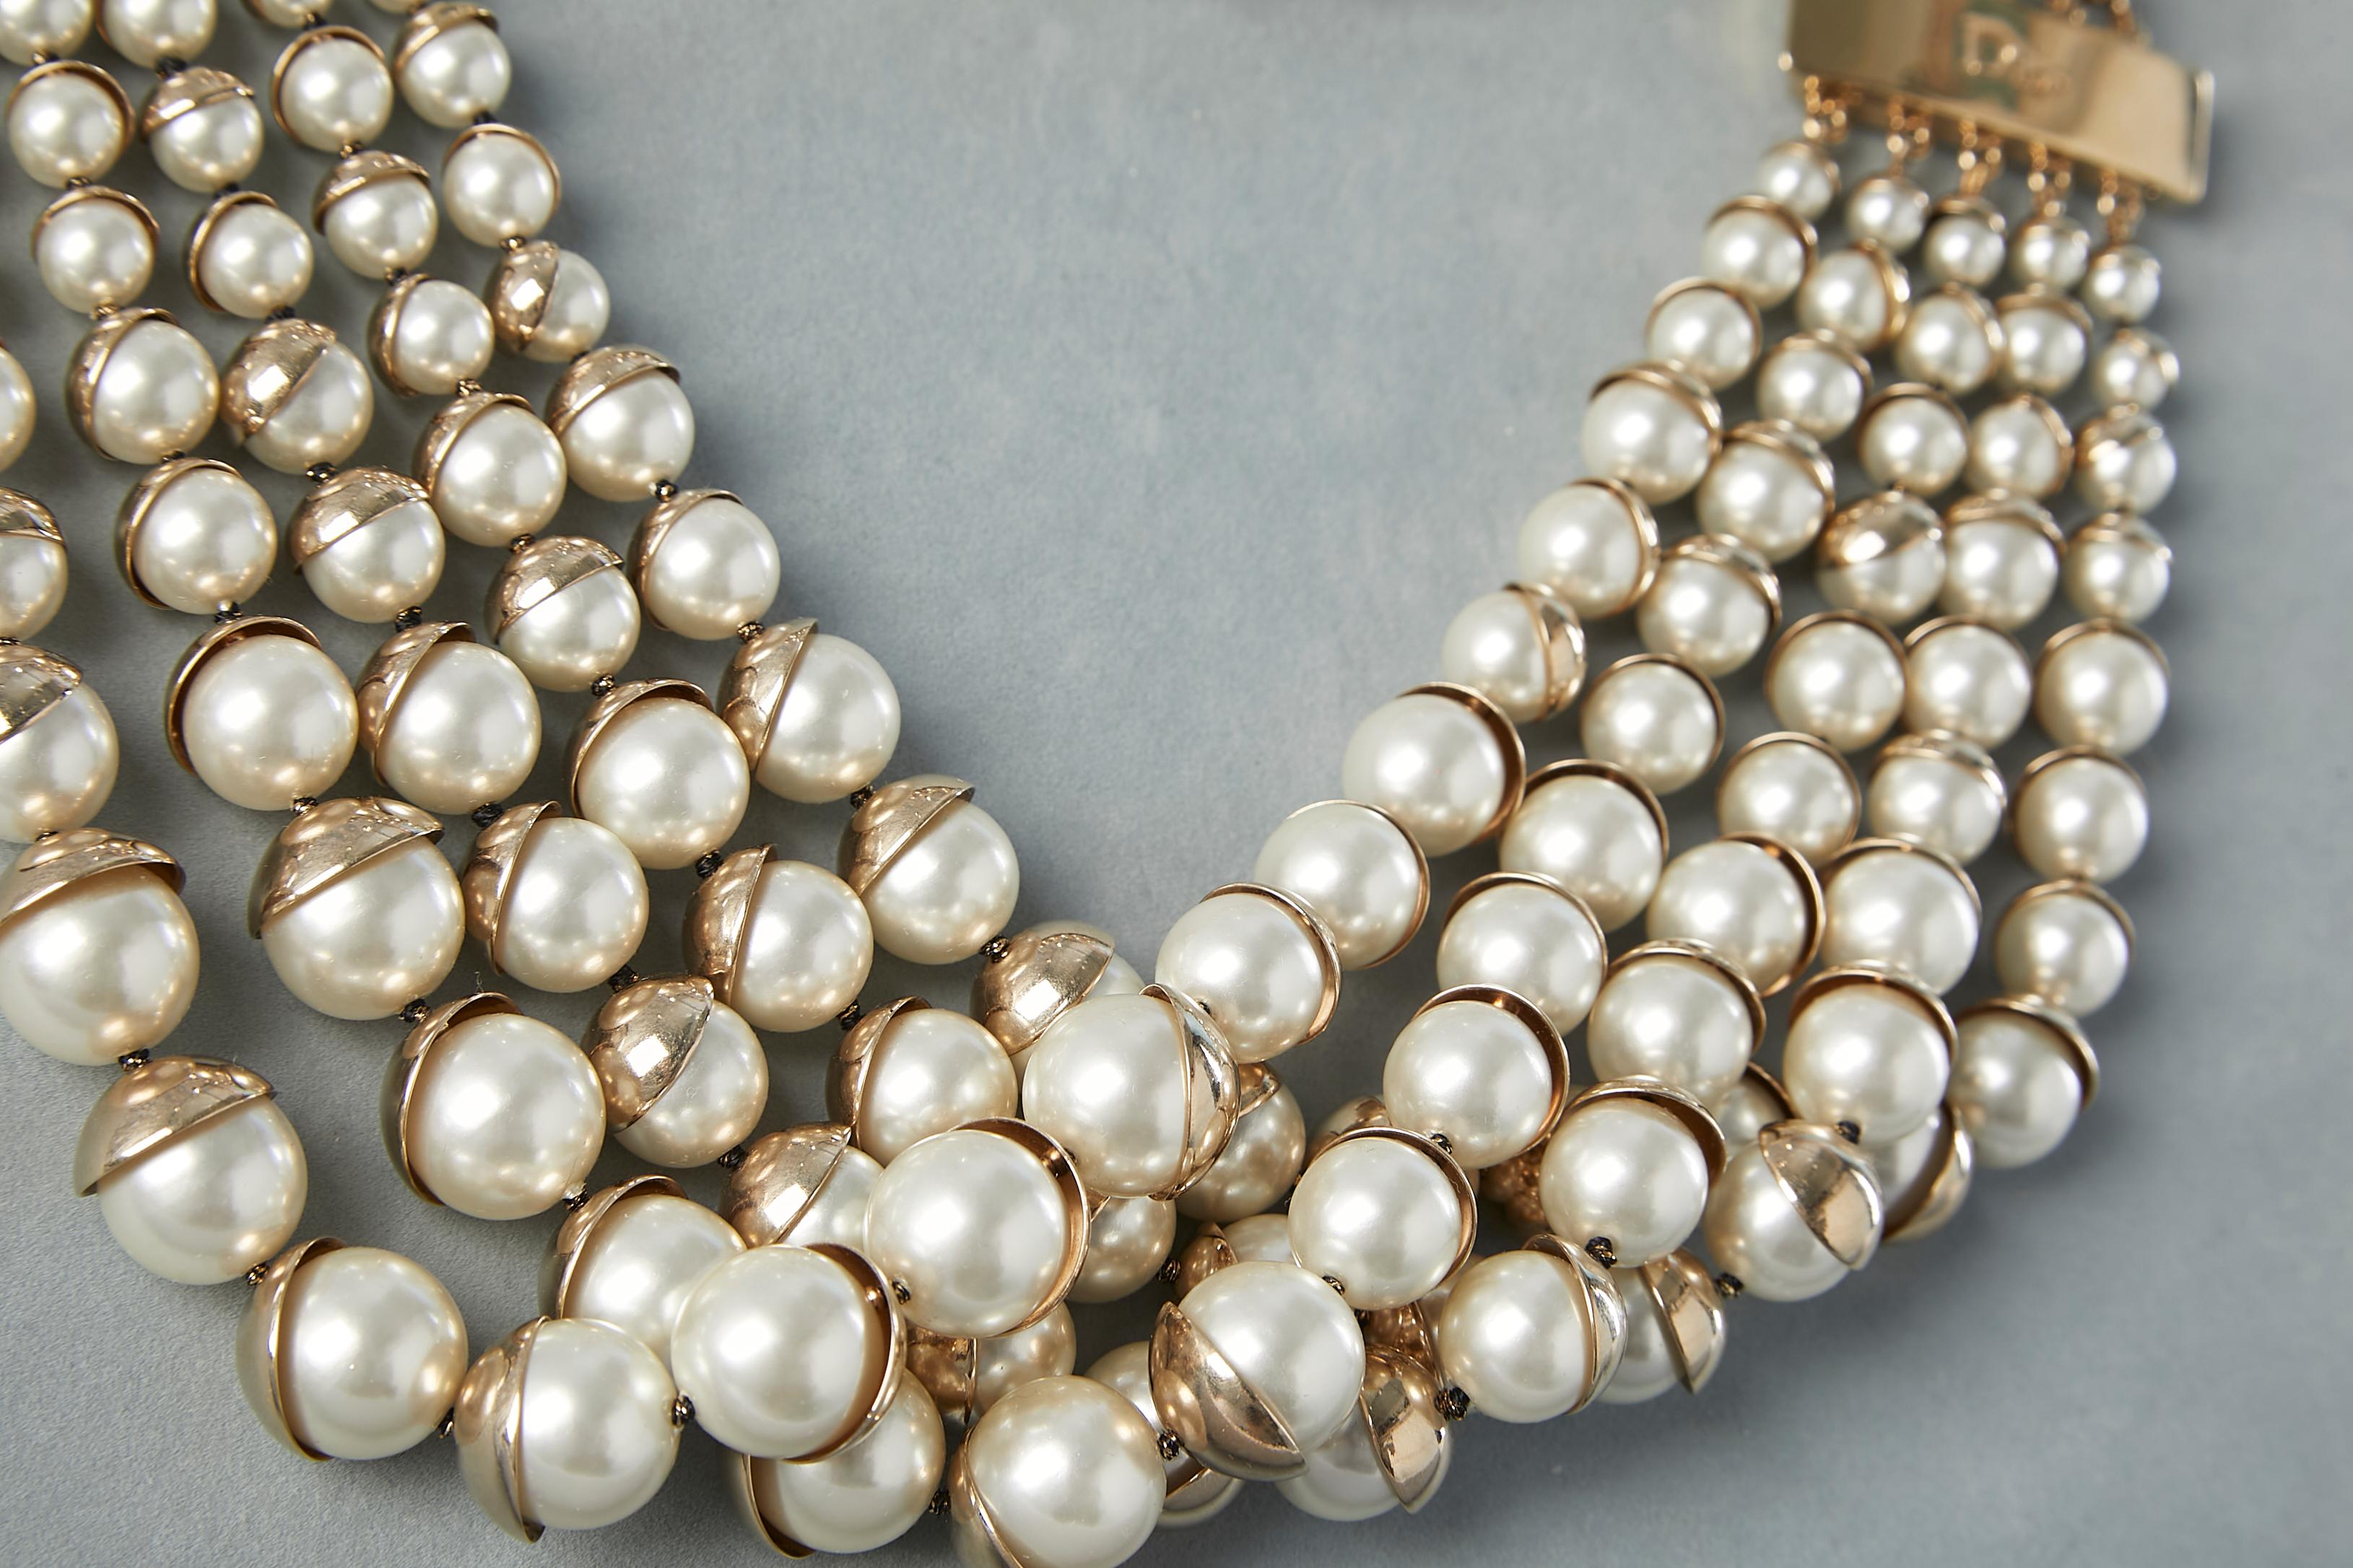 Mehrreihiges Collier mit Perlen. Goldfarbene Metallschließe. Box und Koffer werden mitgeliefert.
Durchmesser = 48 cm